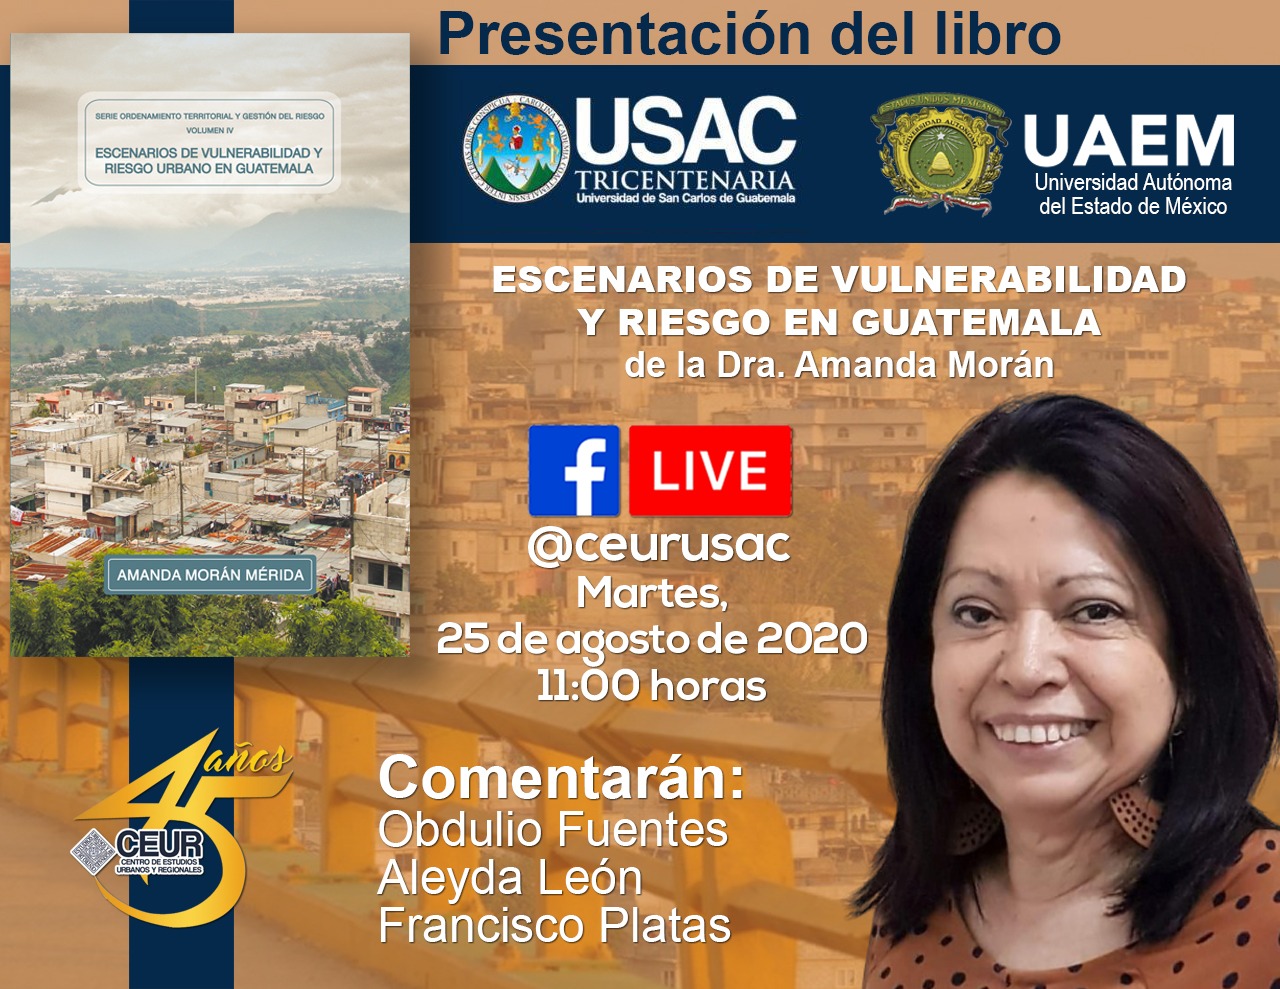 PRESENTACIÓN DEL LIBRO: Escenarios de vulnerabilidad y riesgo urbano en Guatemala #CEUR